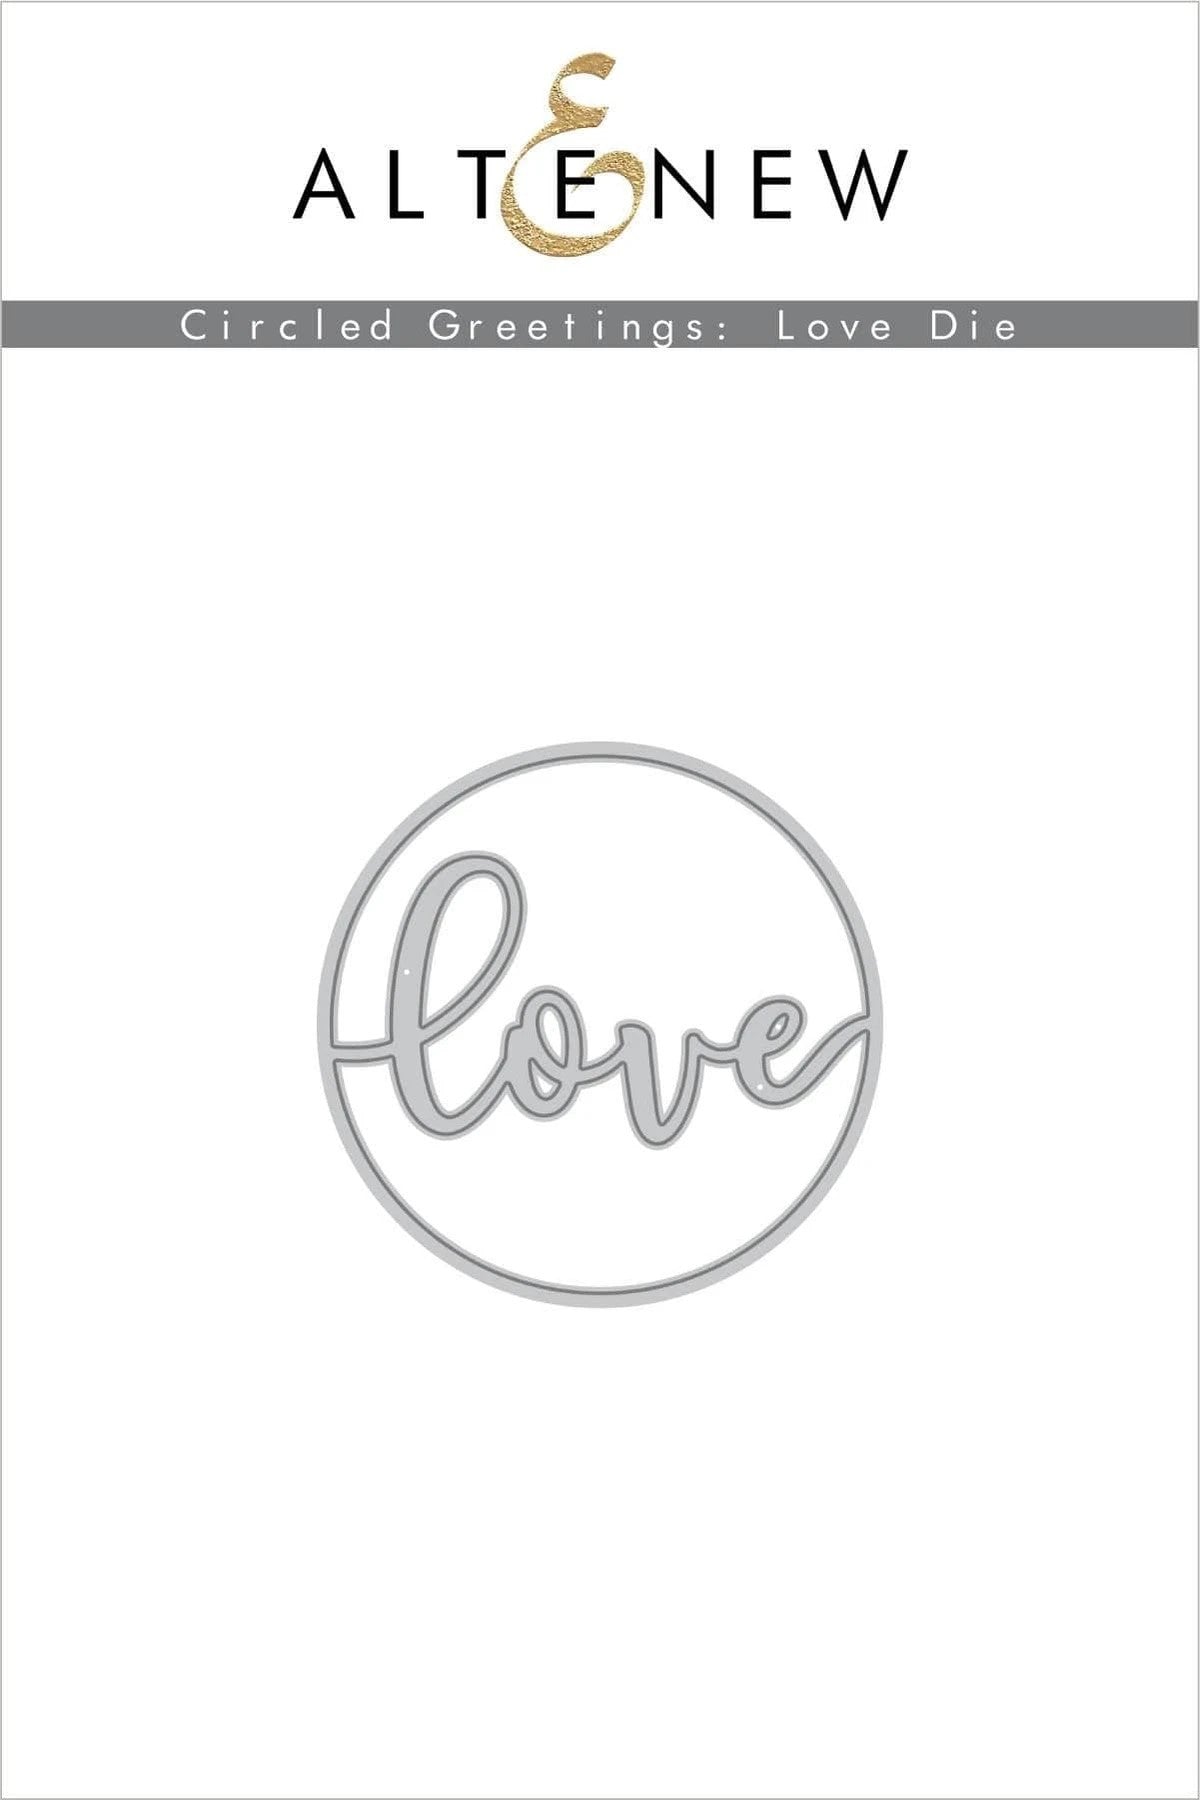 Altenew Circle Greetings: Love Die